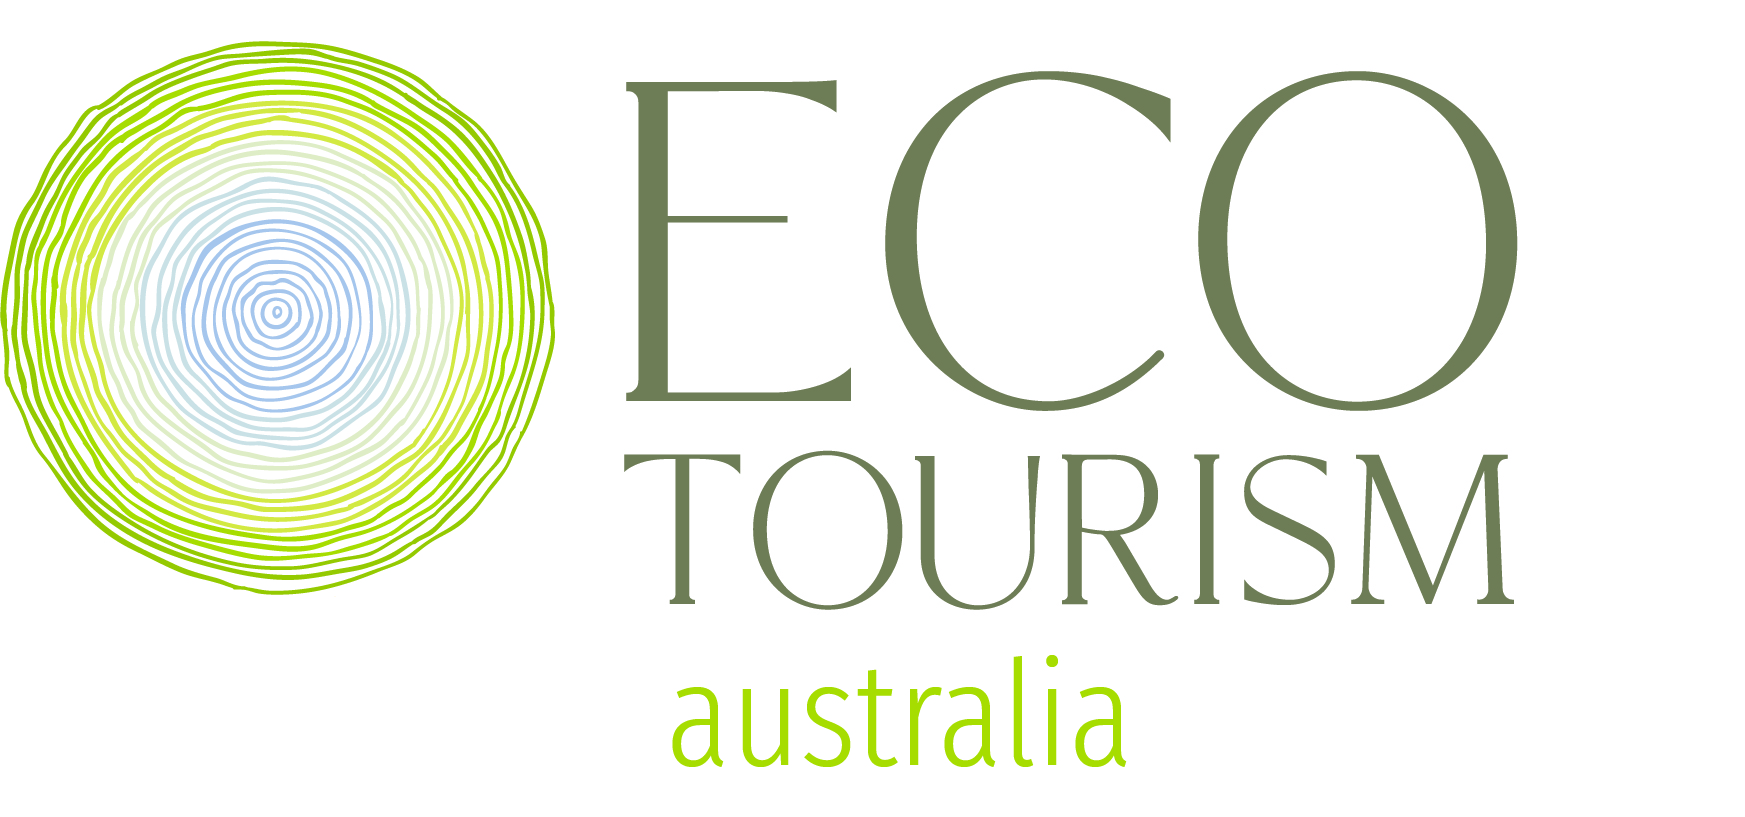 eco tourism industry australia